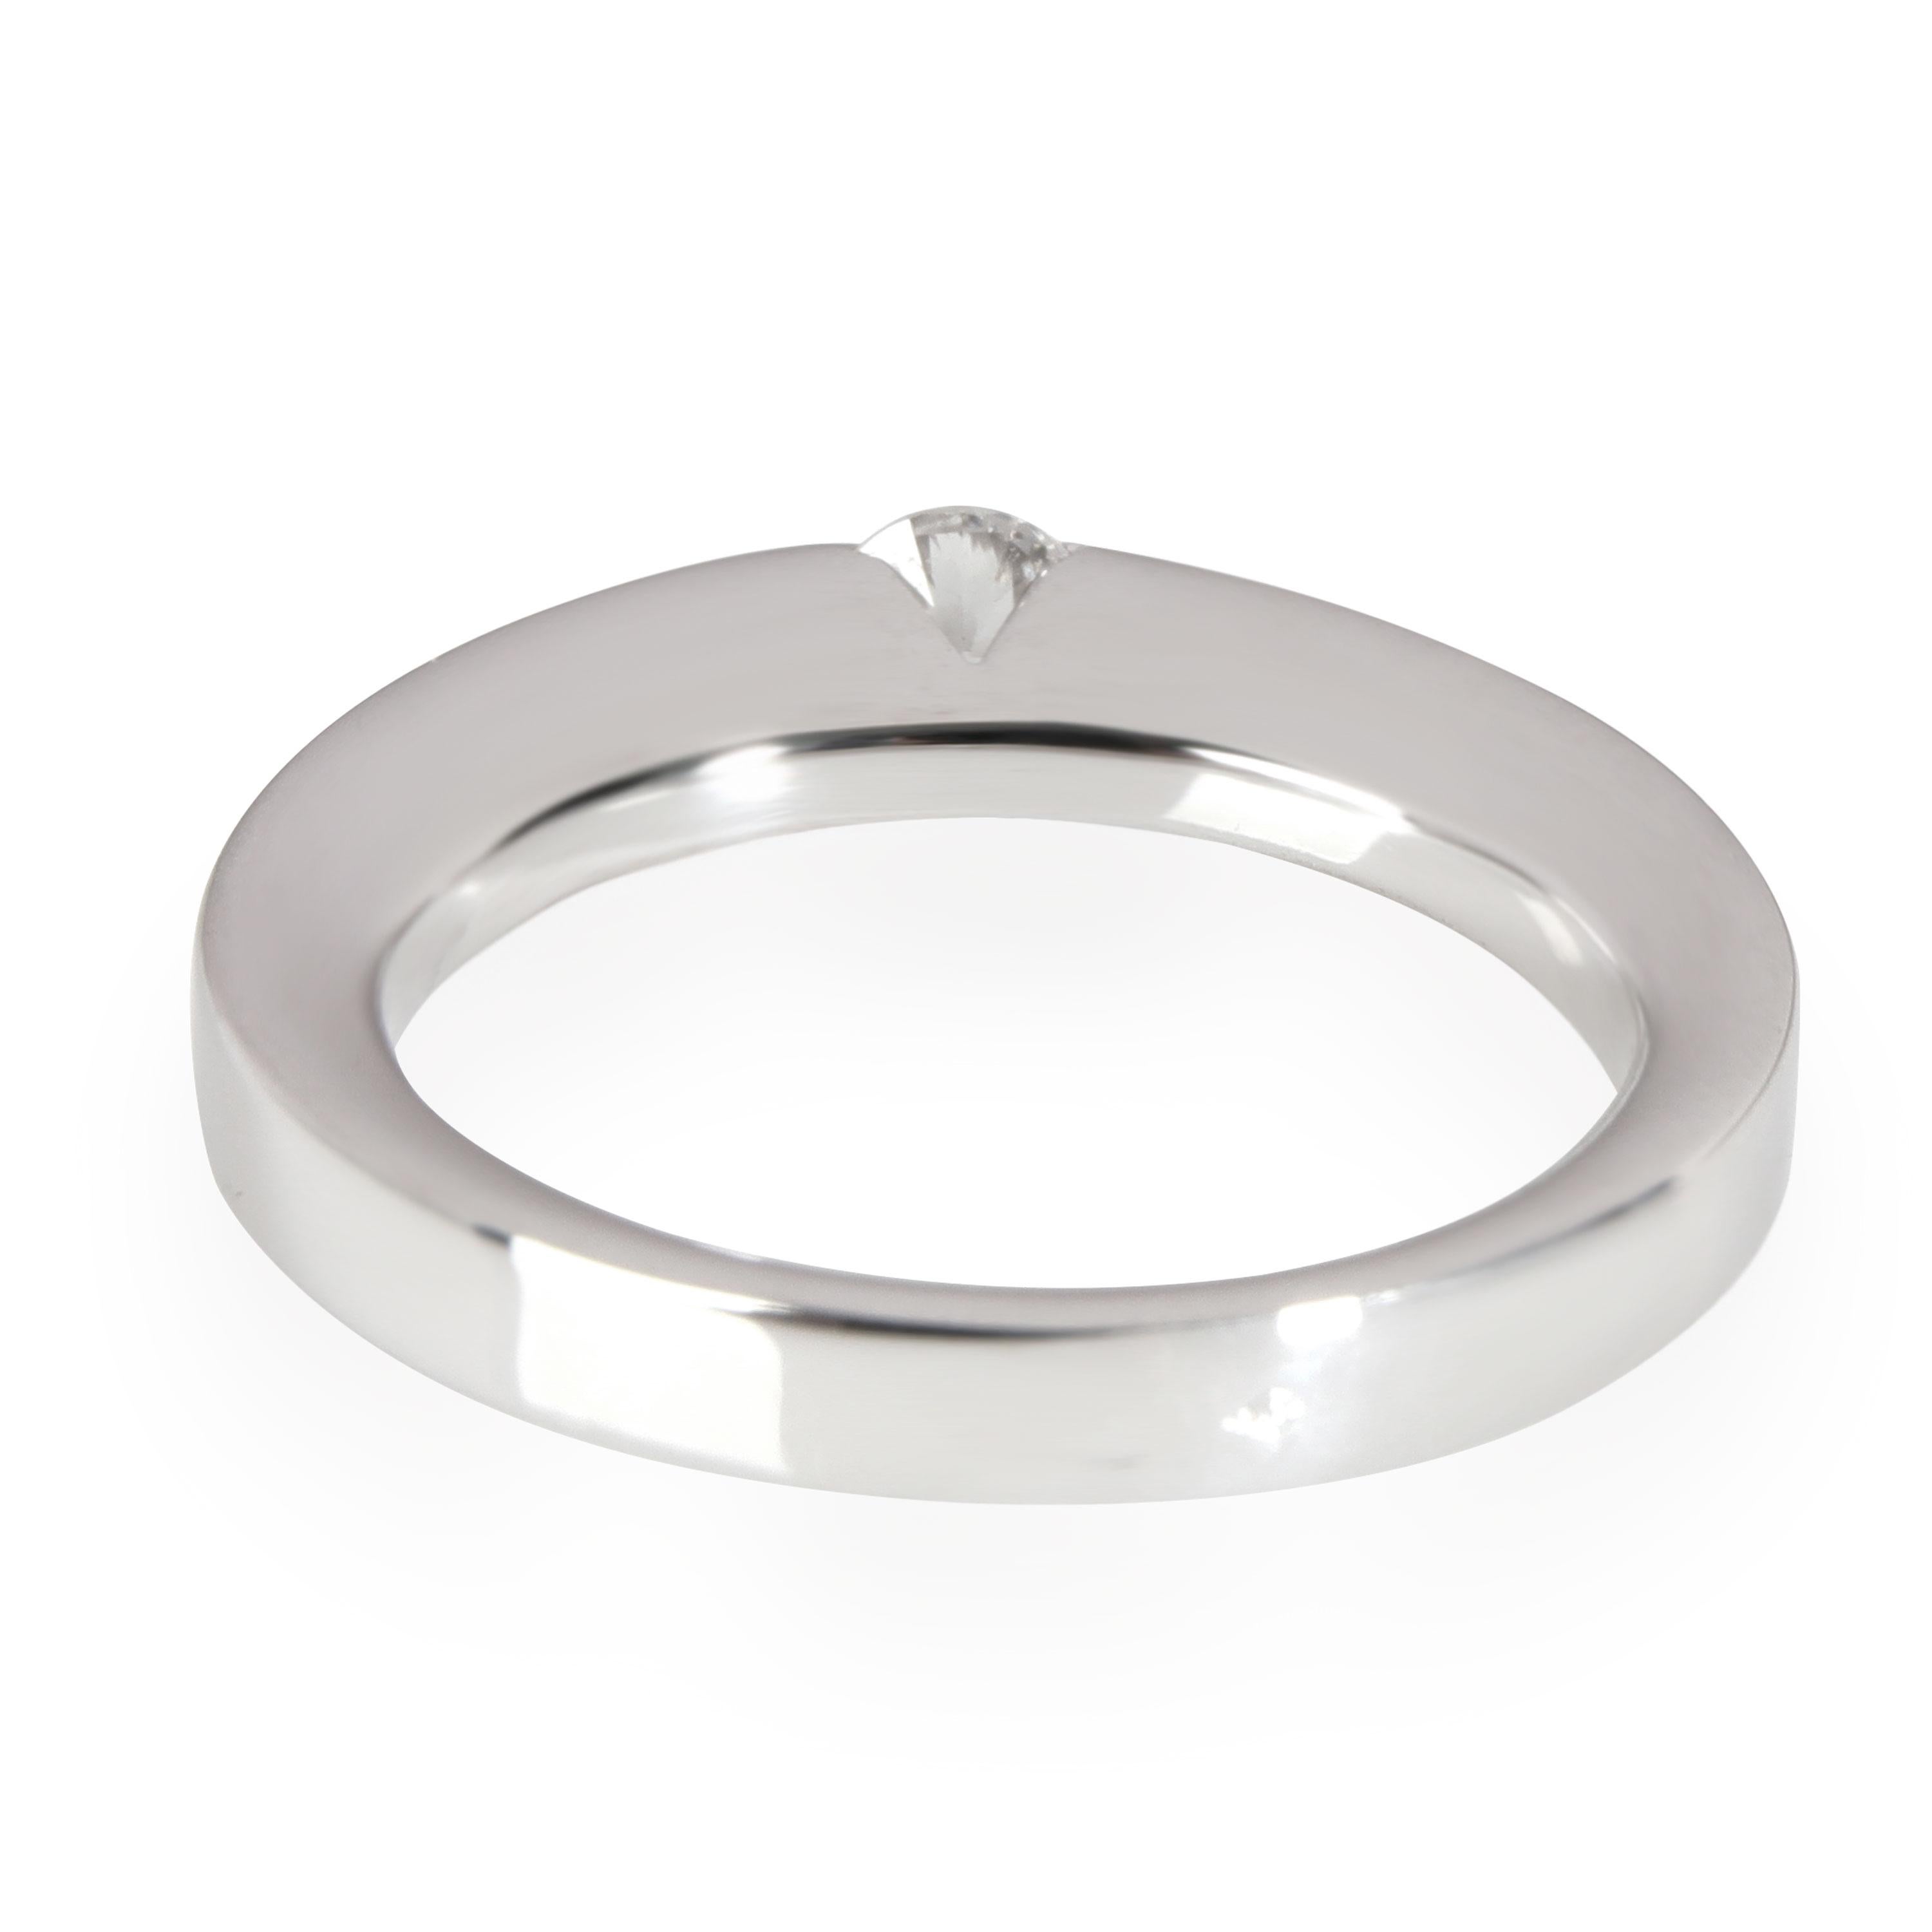 Cartier Diamant Solitär Ring in Platin GIA zertifiziert G VVS1 0,21 CT

PRIMÄRE DETAILS
SKU: 112091
Auflistung Titel: Cartier Diamant Solitär Ring in Platin GIA zertifiziert G VVS1 0,21 CT
Zustand Beschreibung: Verkauft für 2.180 USD. In